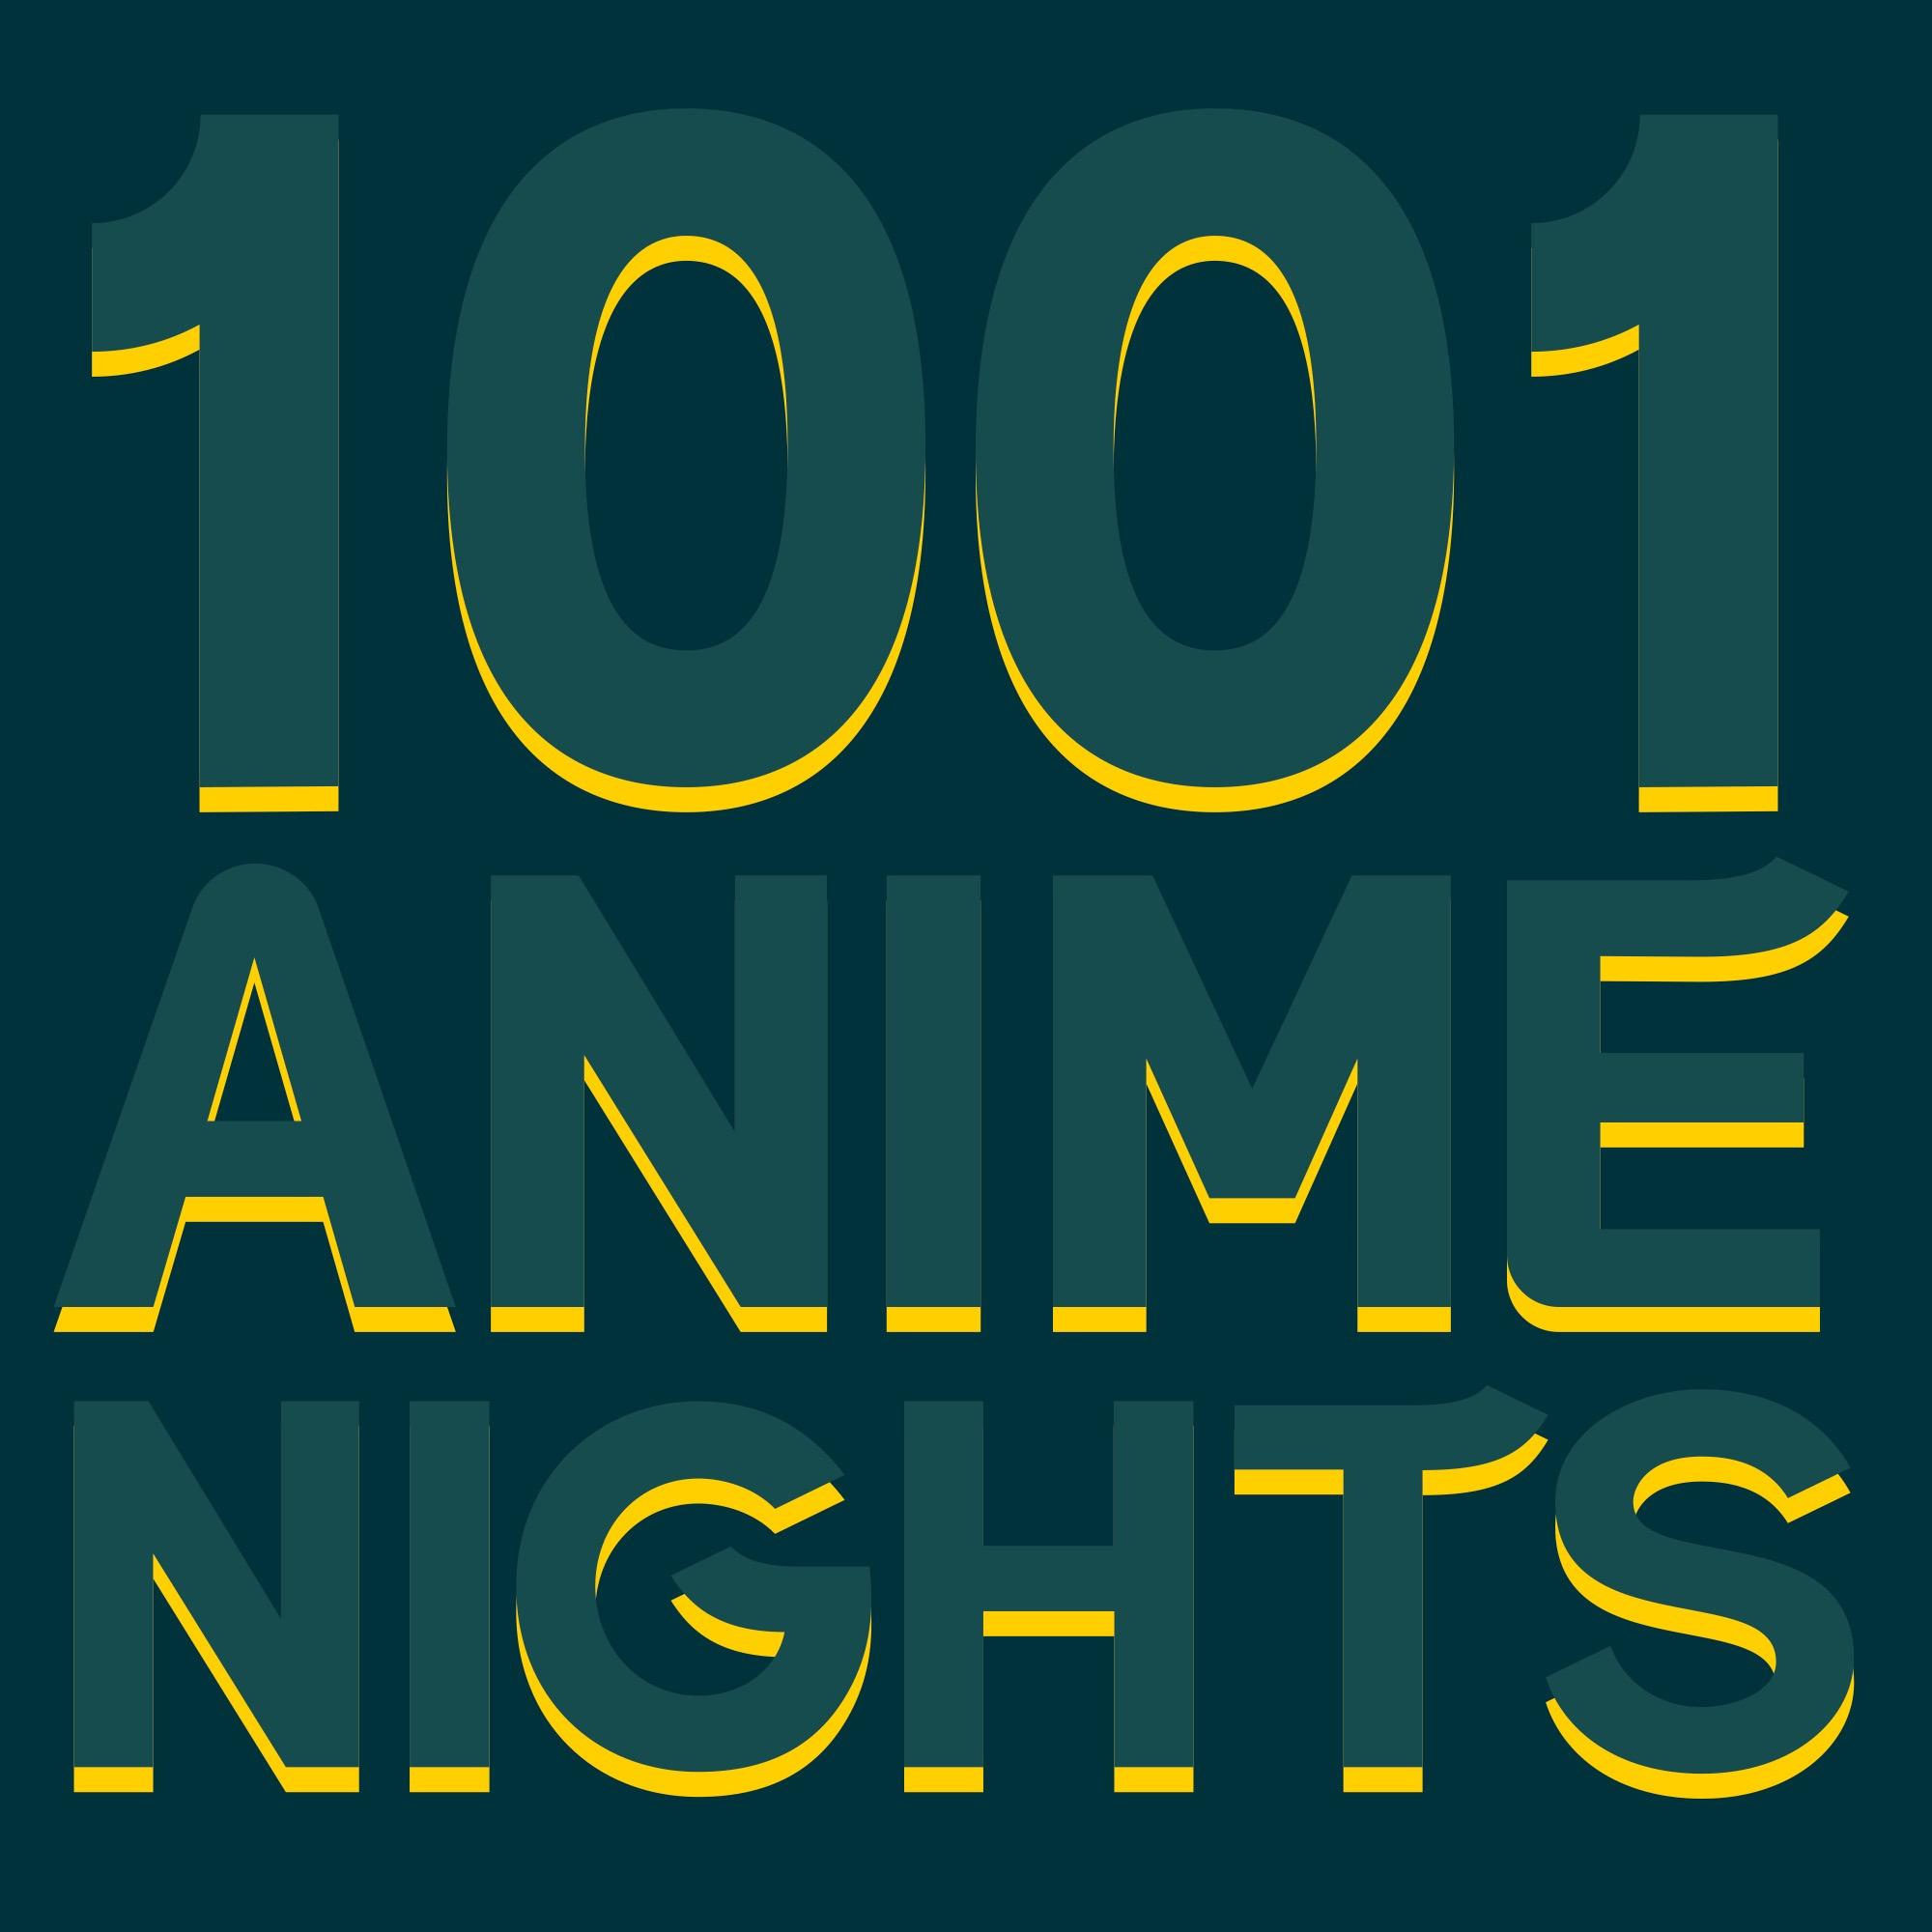 1001 Anime Nights